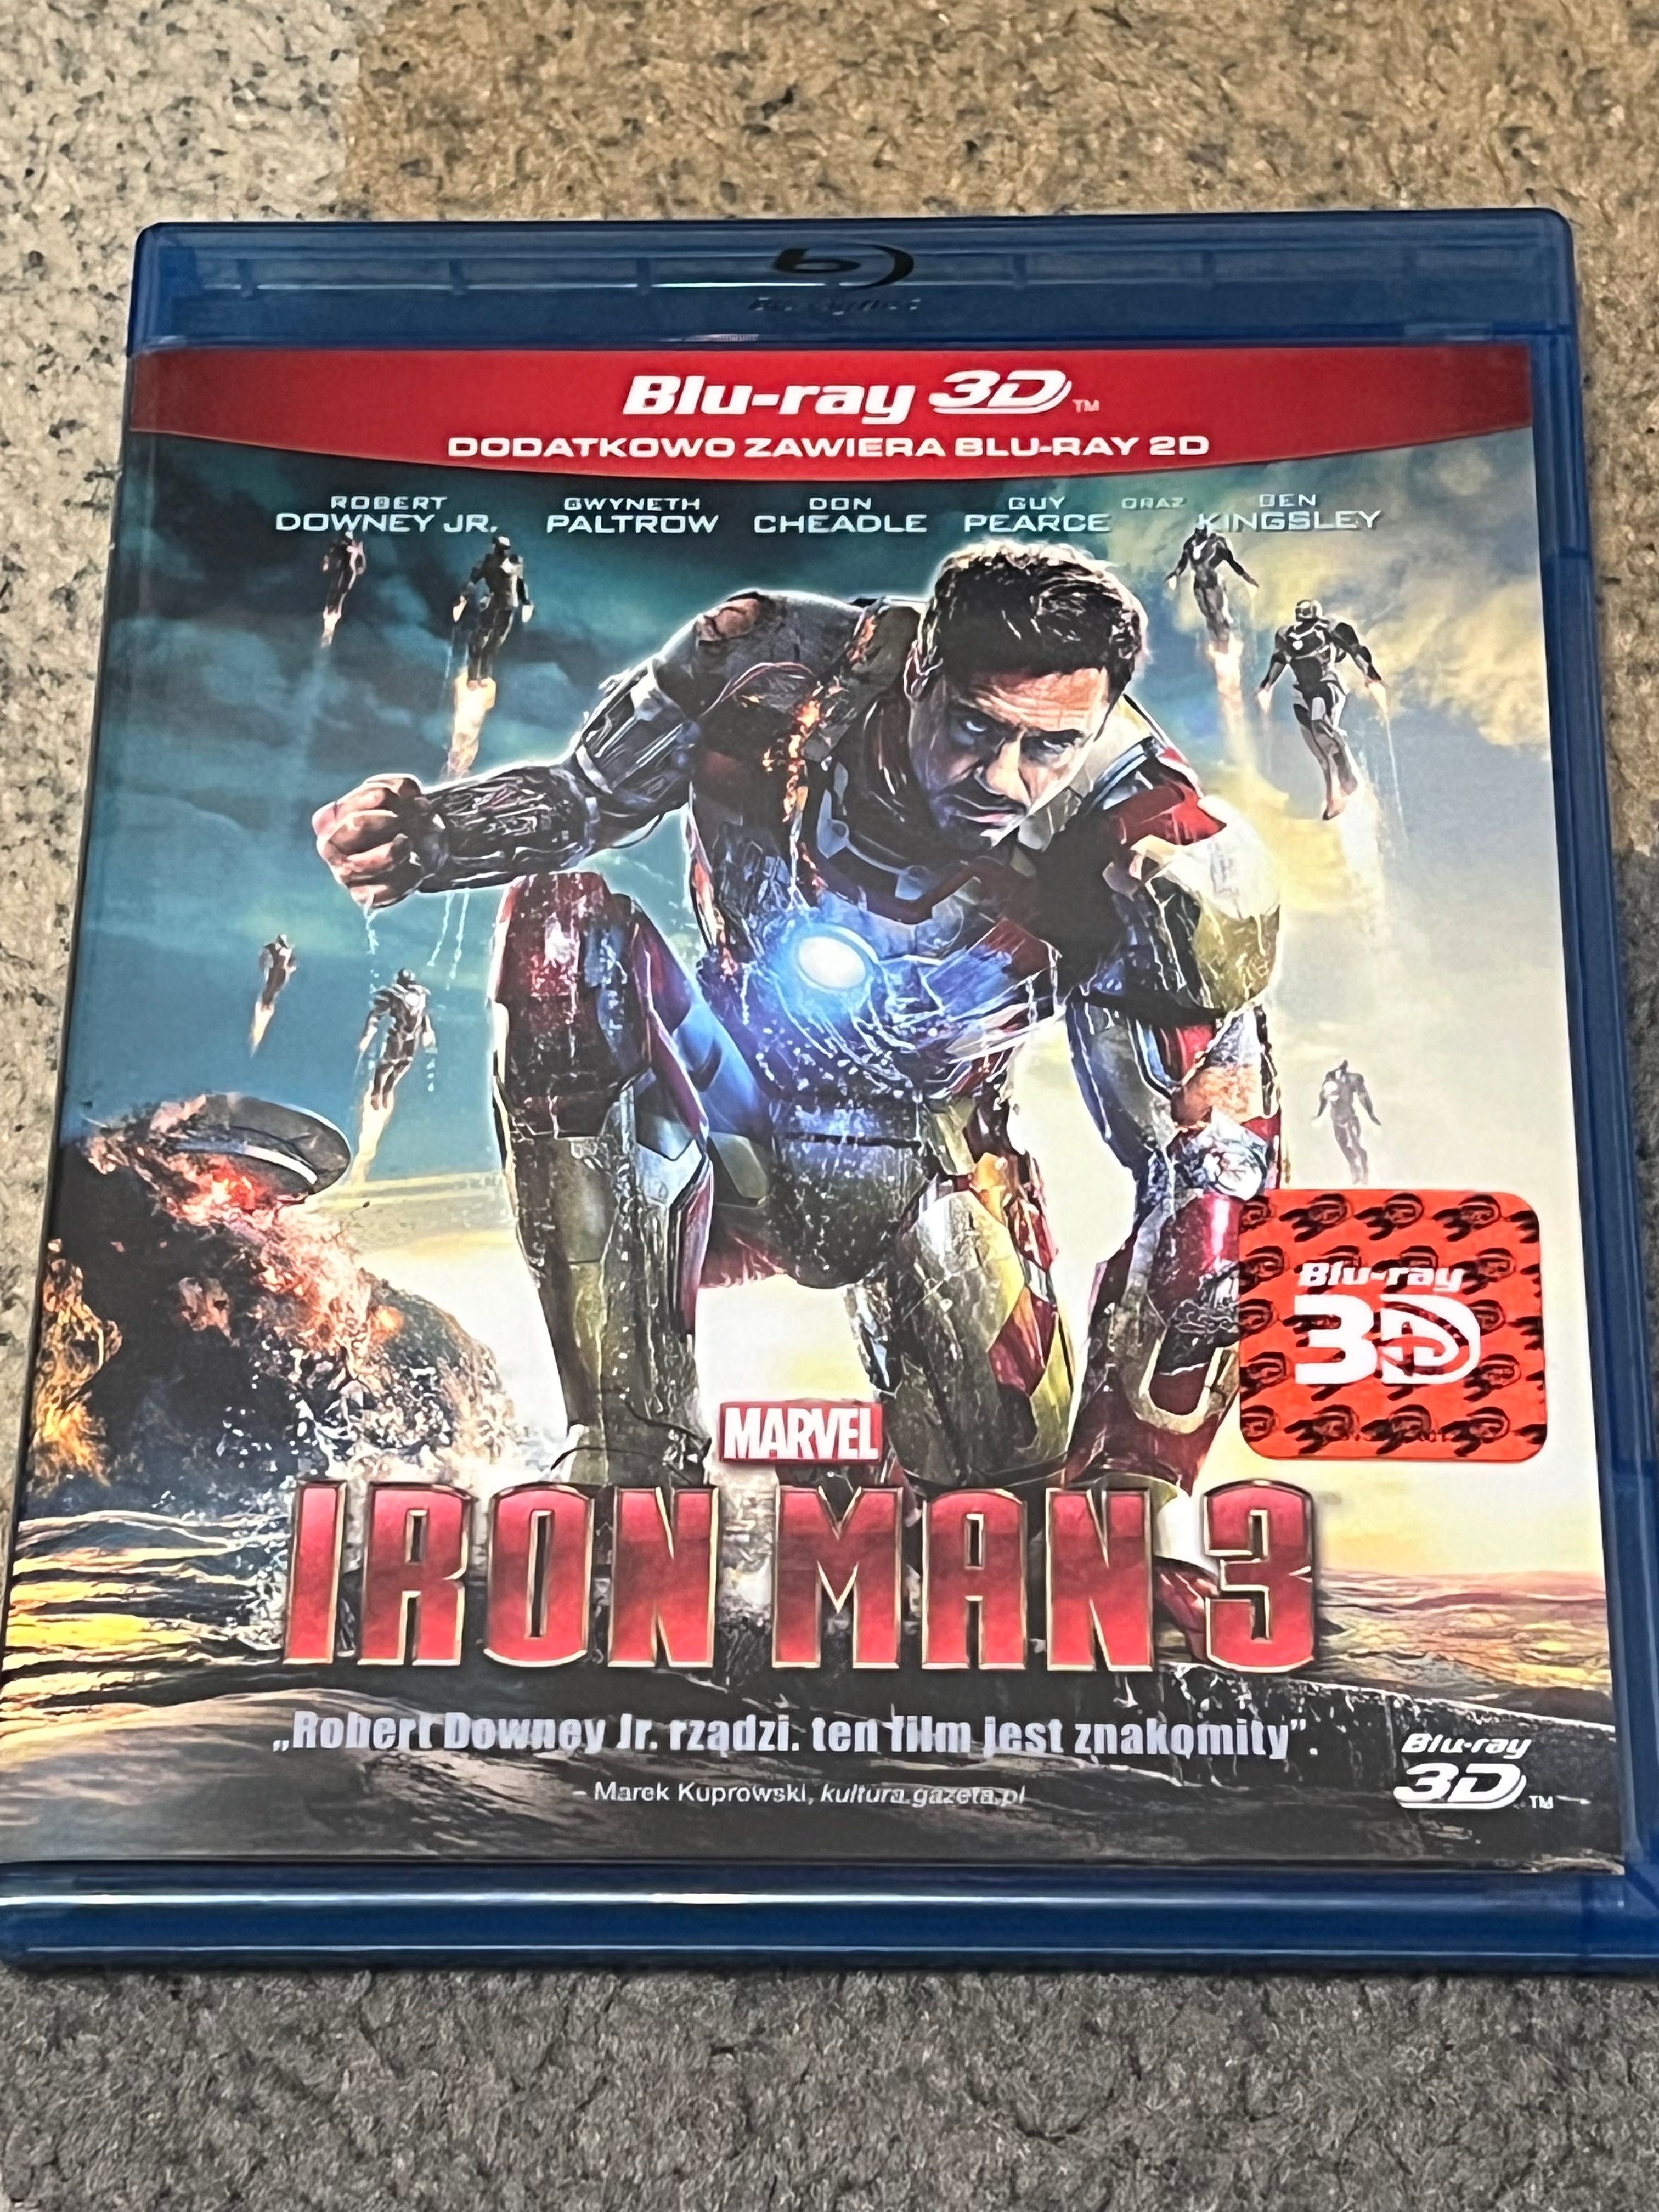 Iron Man 3 Blu-Rey 3D